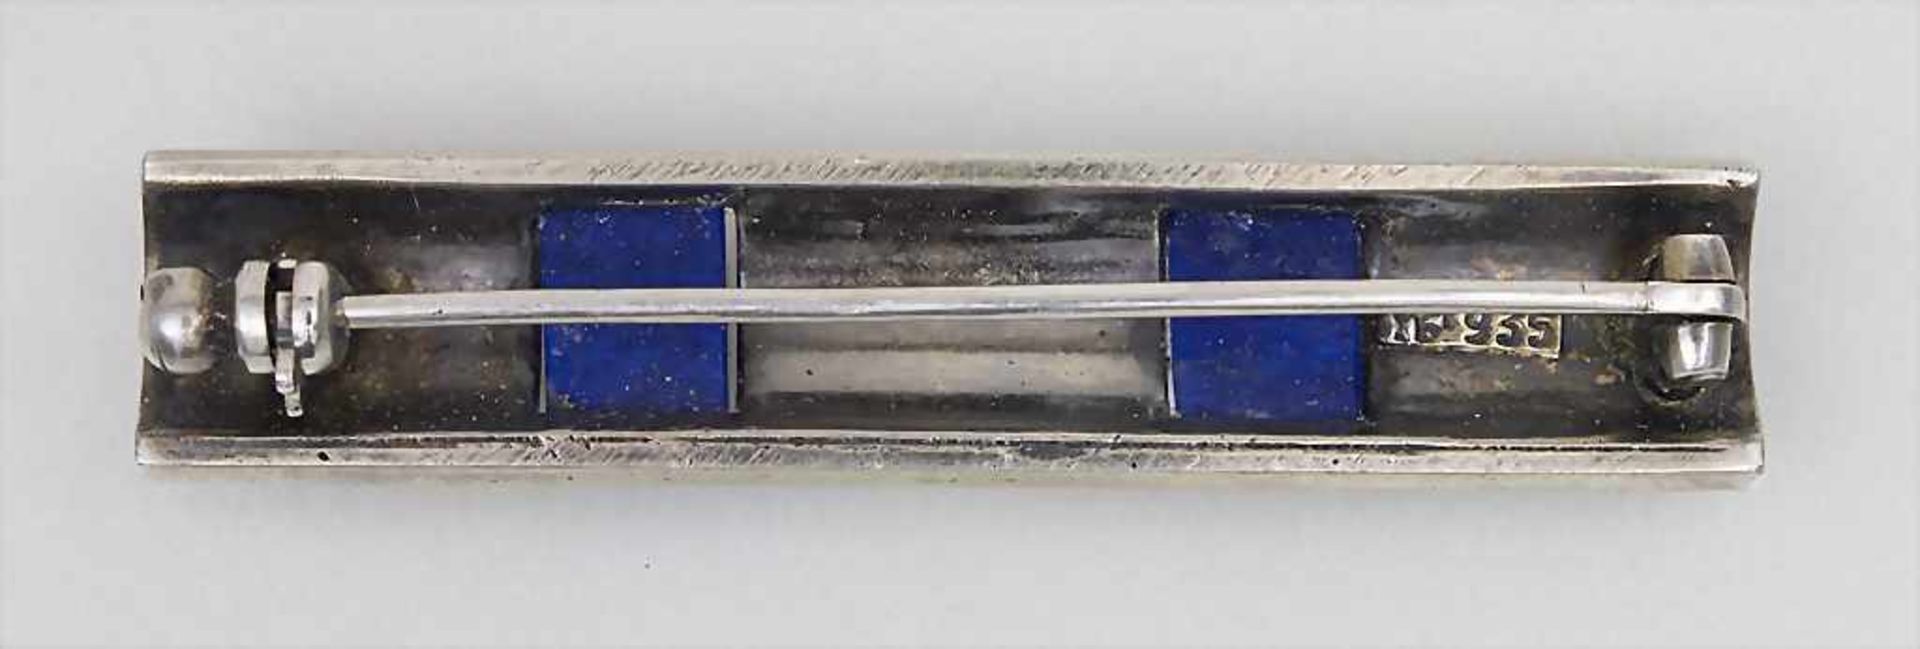 Art Deco Brosche / An Art Deco brooch, Theodor Fahrner, Pforzheim, um 1925Material: Silber 935, - Image 2 of 3